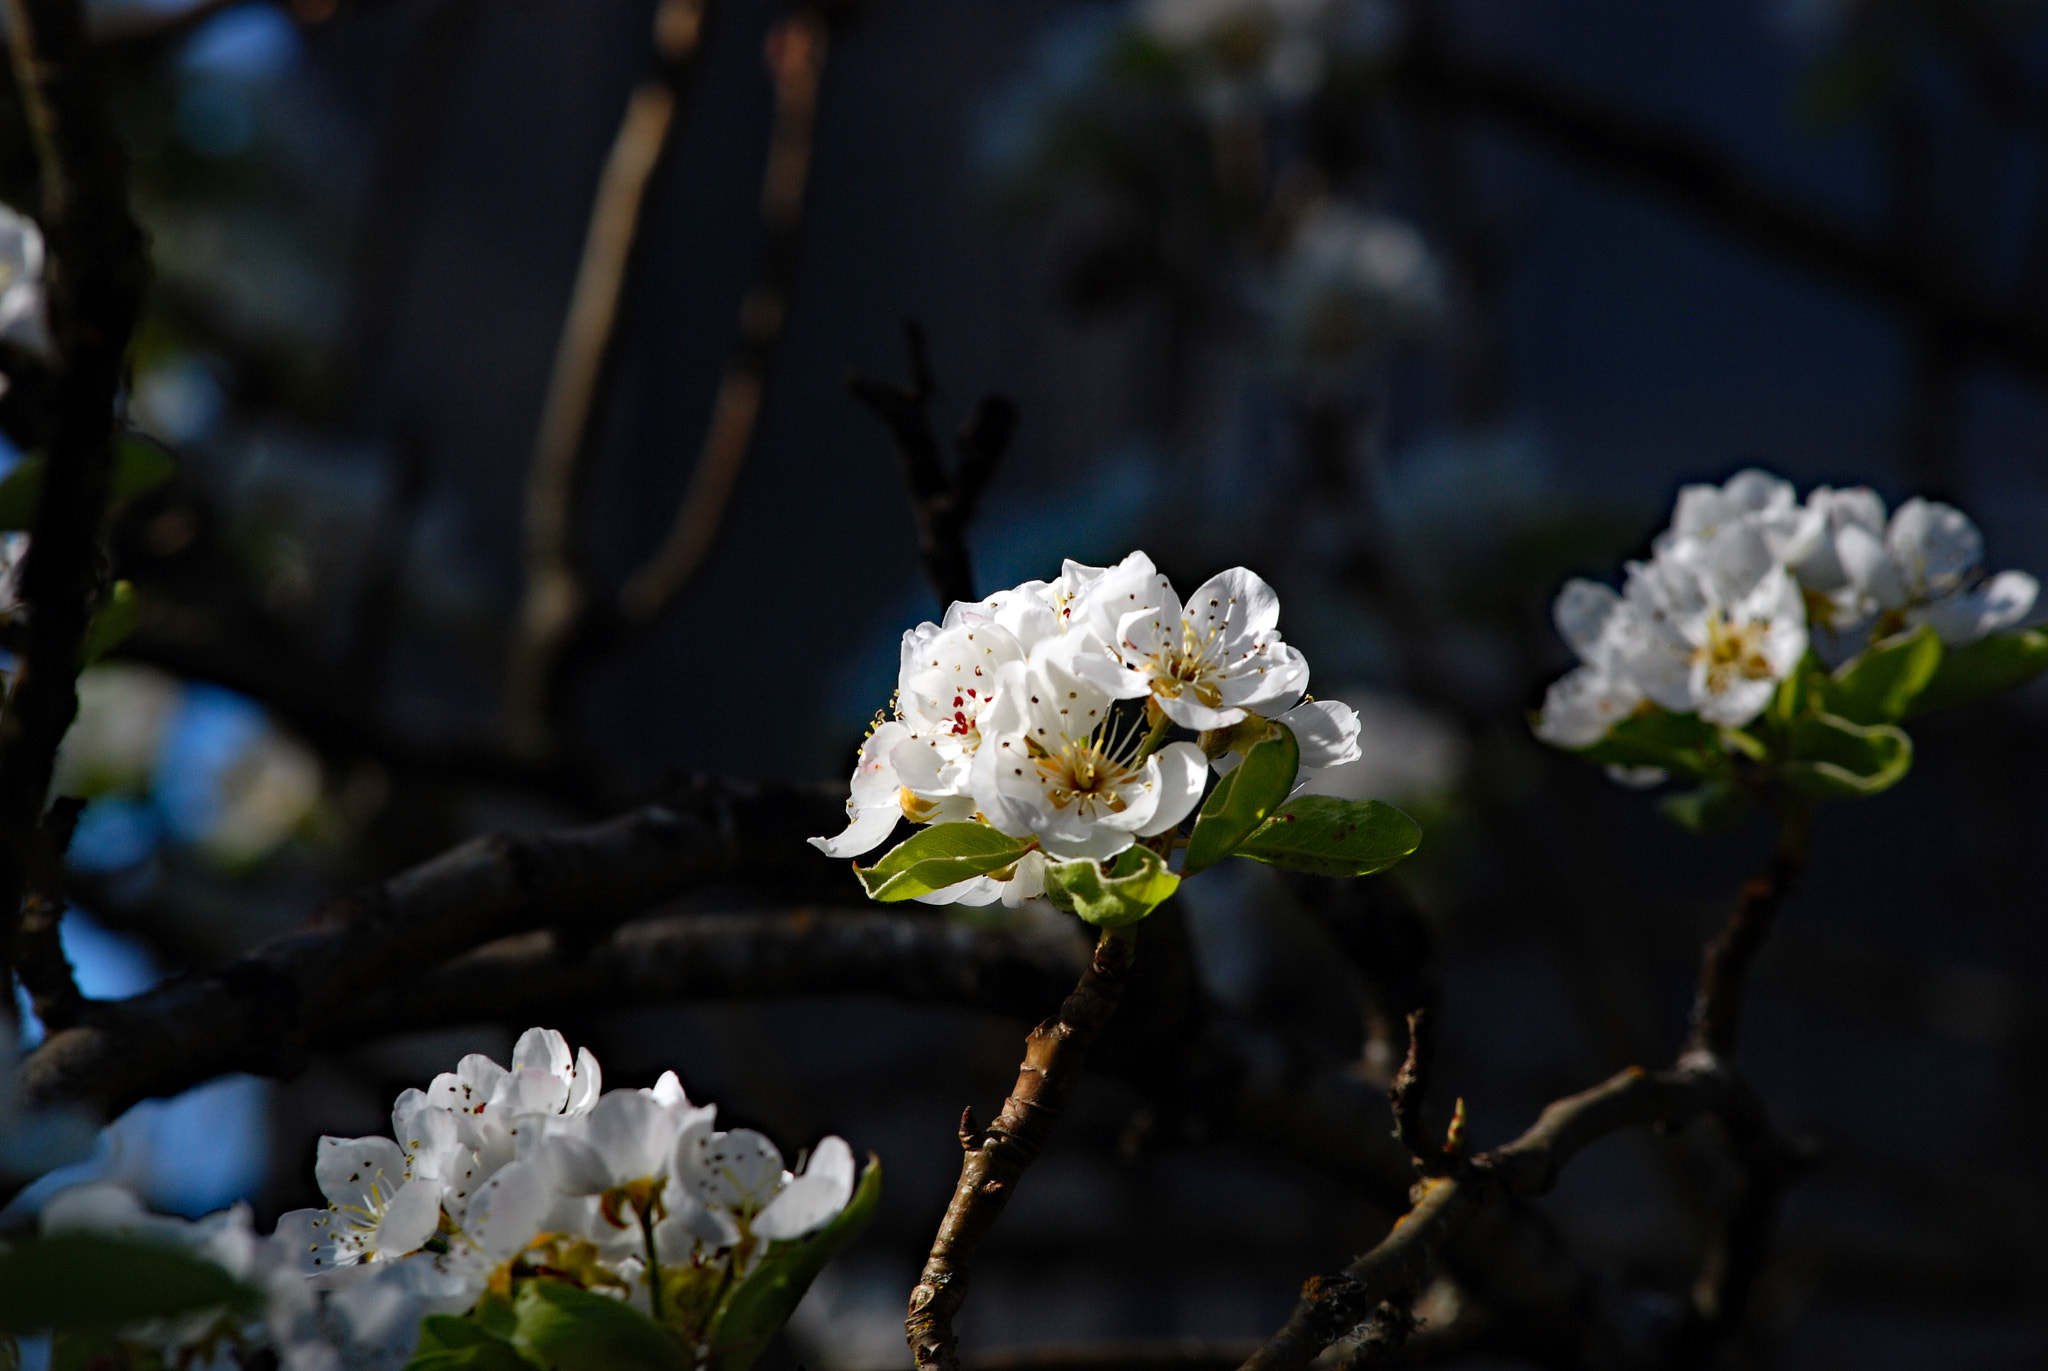 Nikon D80 + Nikon AF-Nikkor 80-200mm F2.8D ED sample photo. Spring flower blossom photography